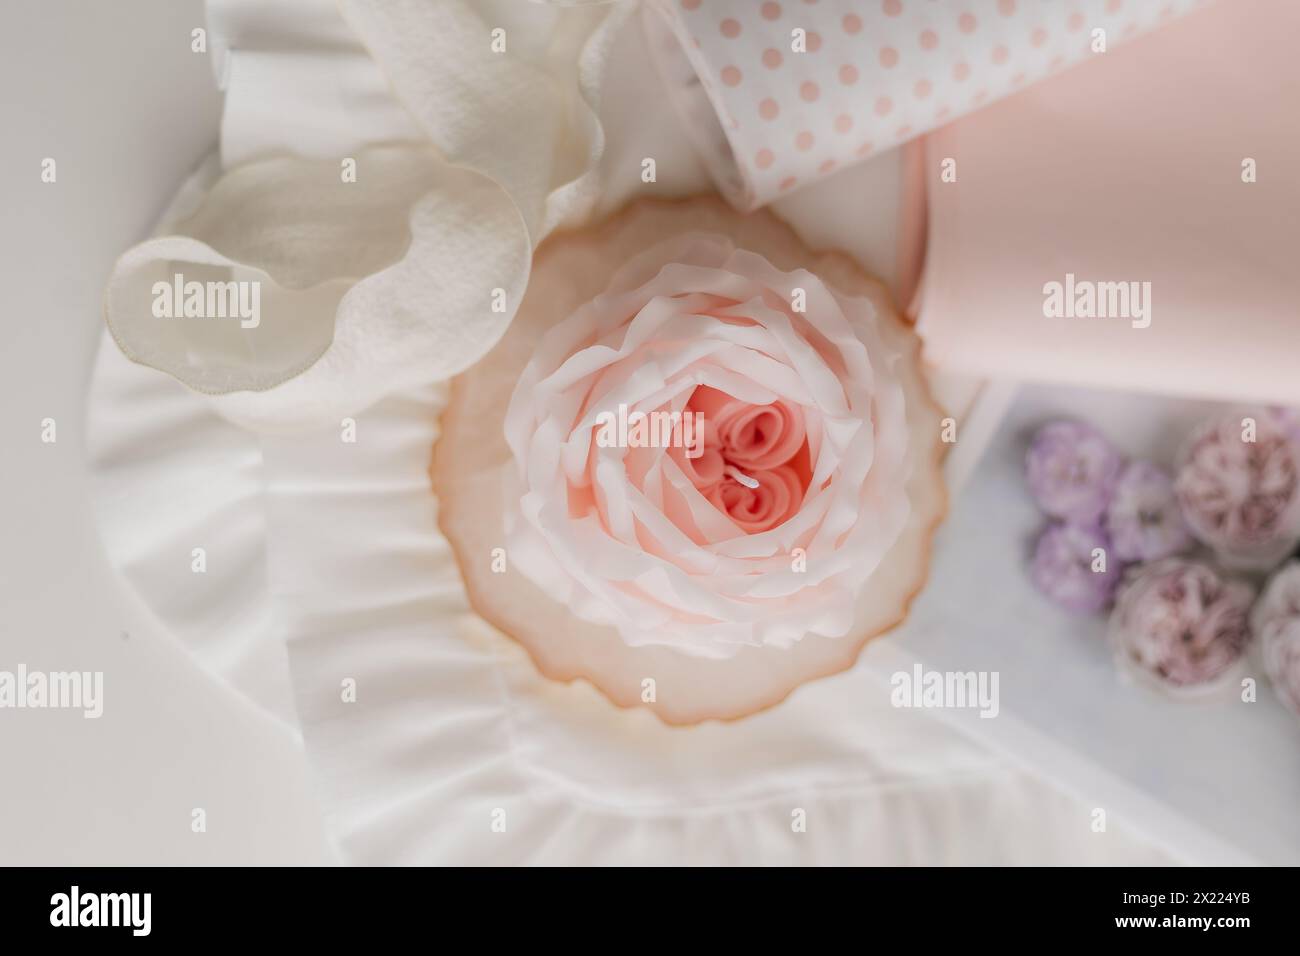 candela fatta a mano a forma di fiore su sfondo chiaro, spazio per testo. Foto di alta qualità Foto Stock